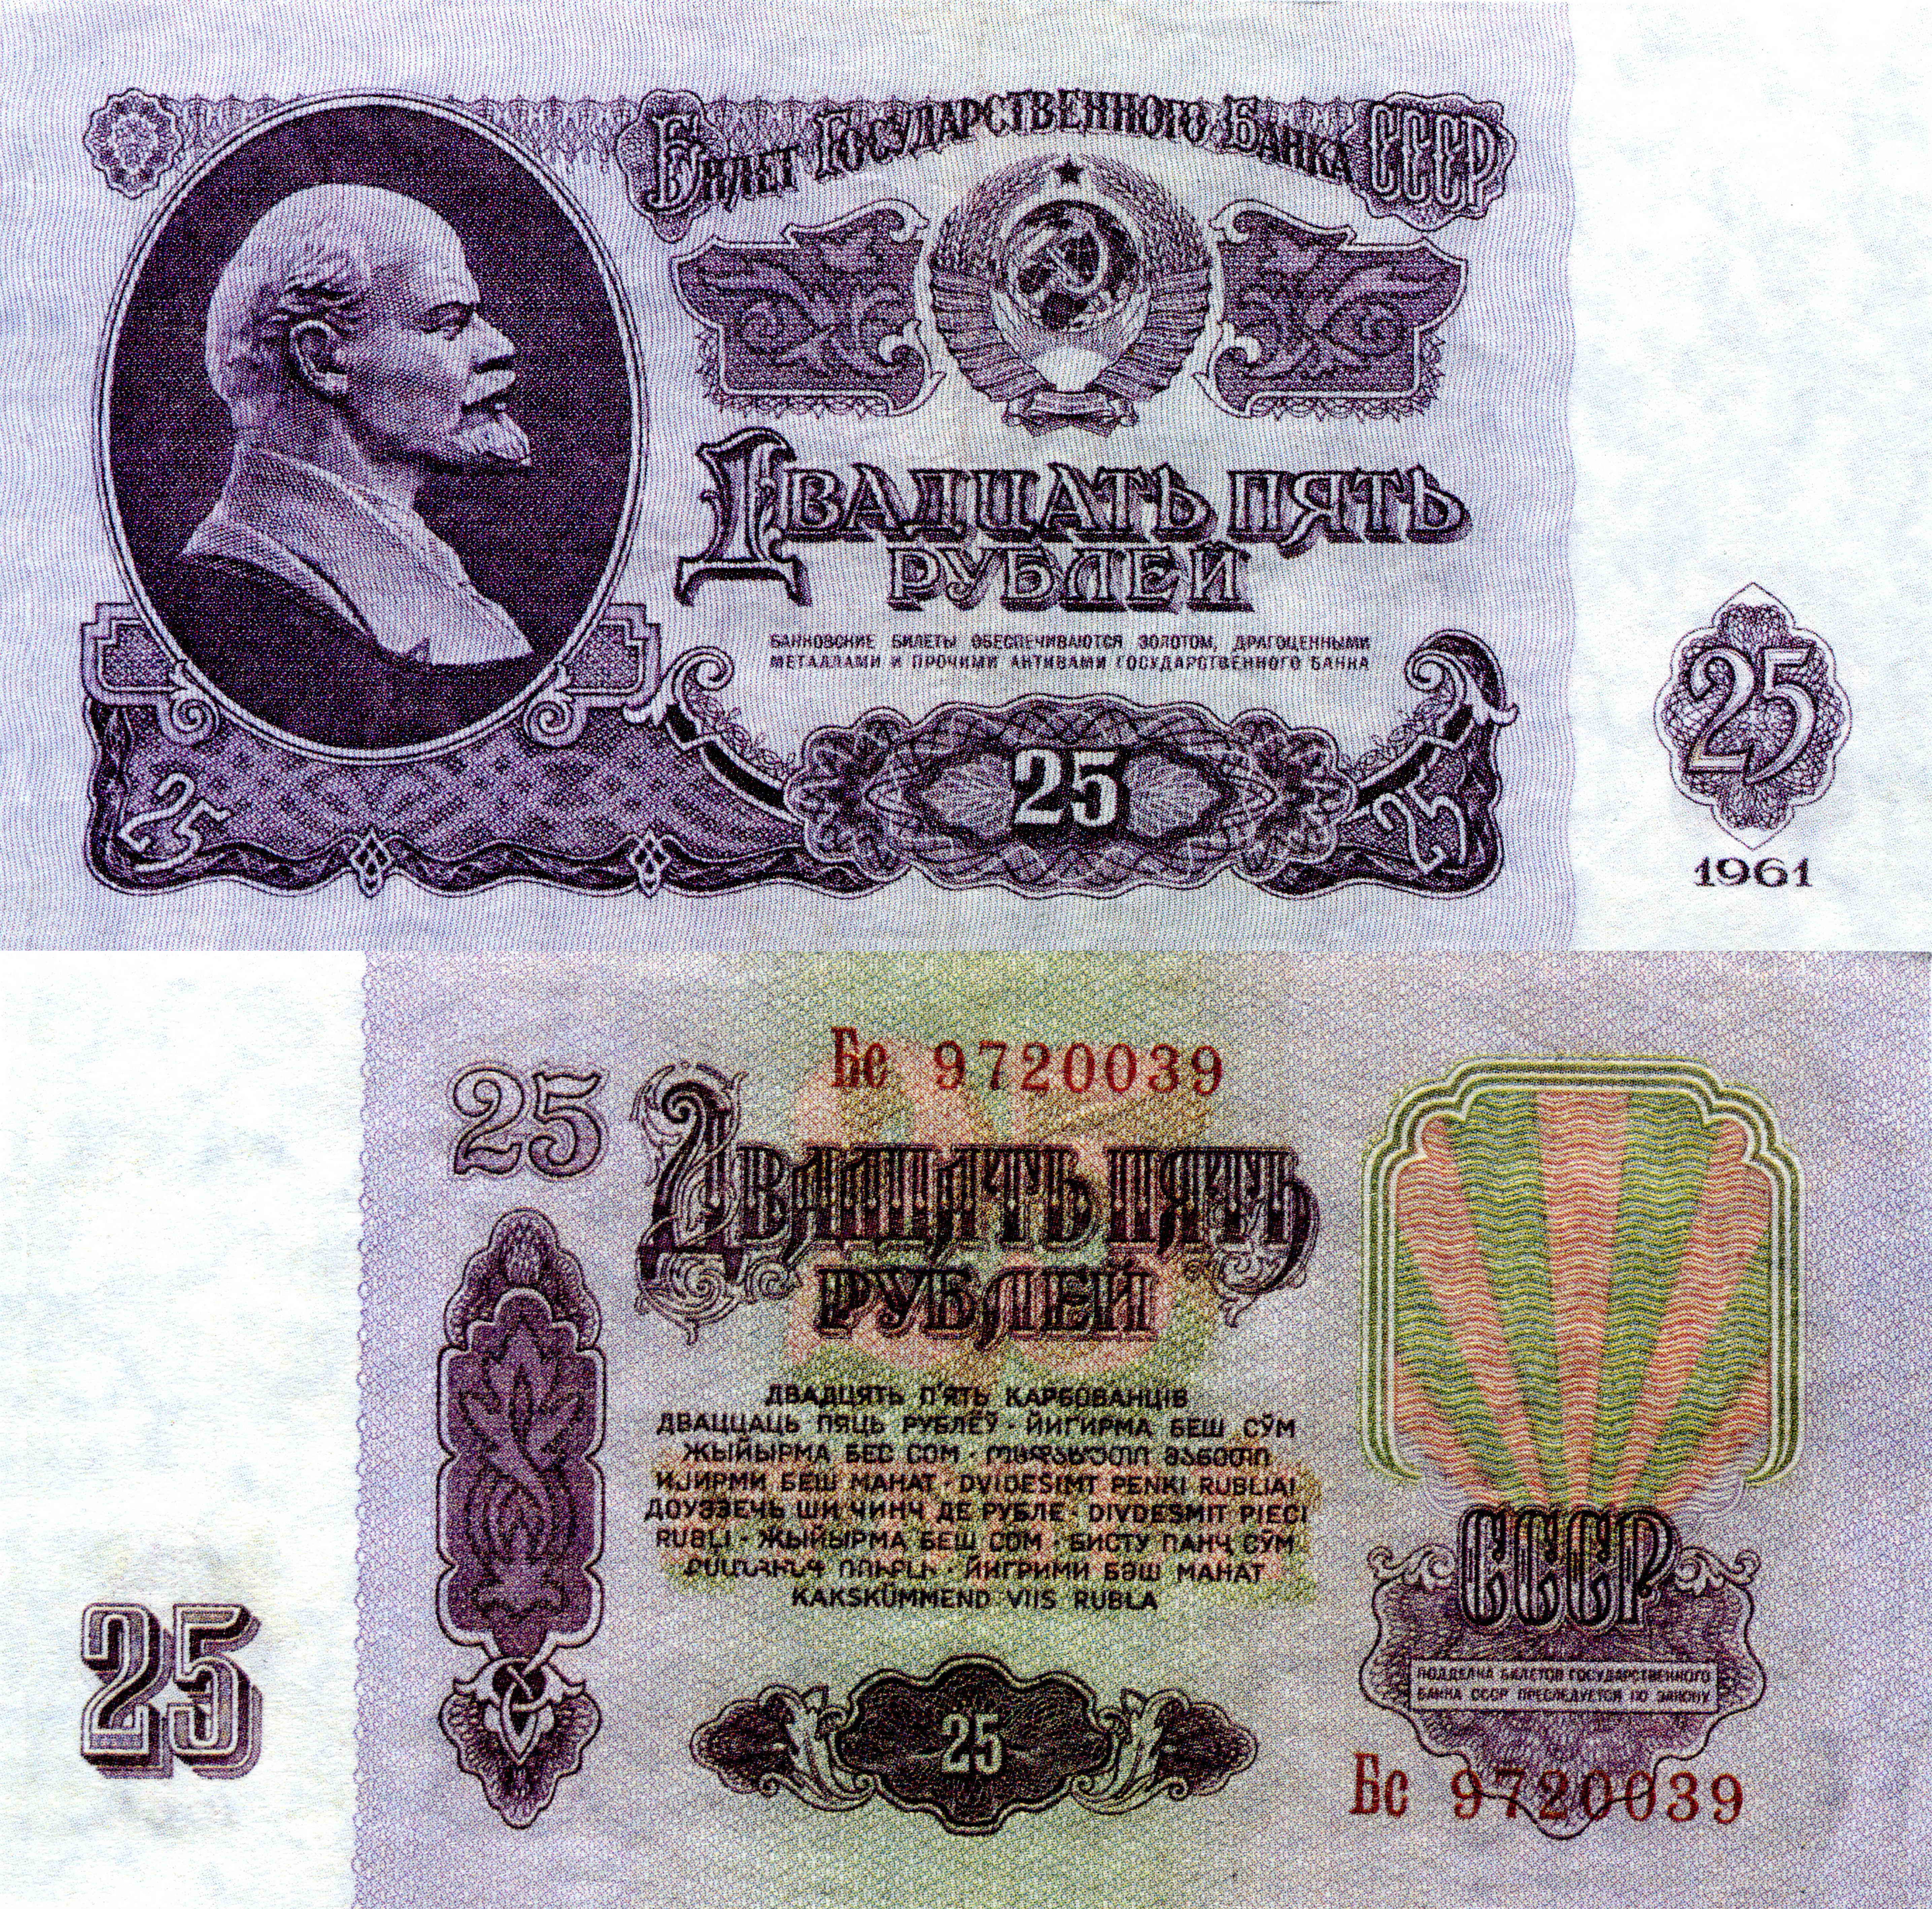 Картинки Рубли Купюры 25 1961 Деньги 5739x5670 Банкноты